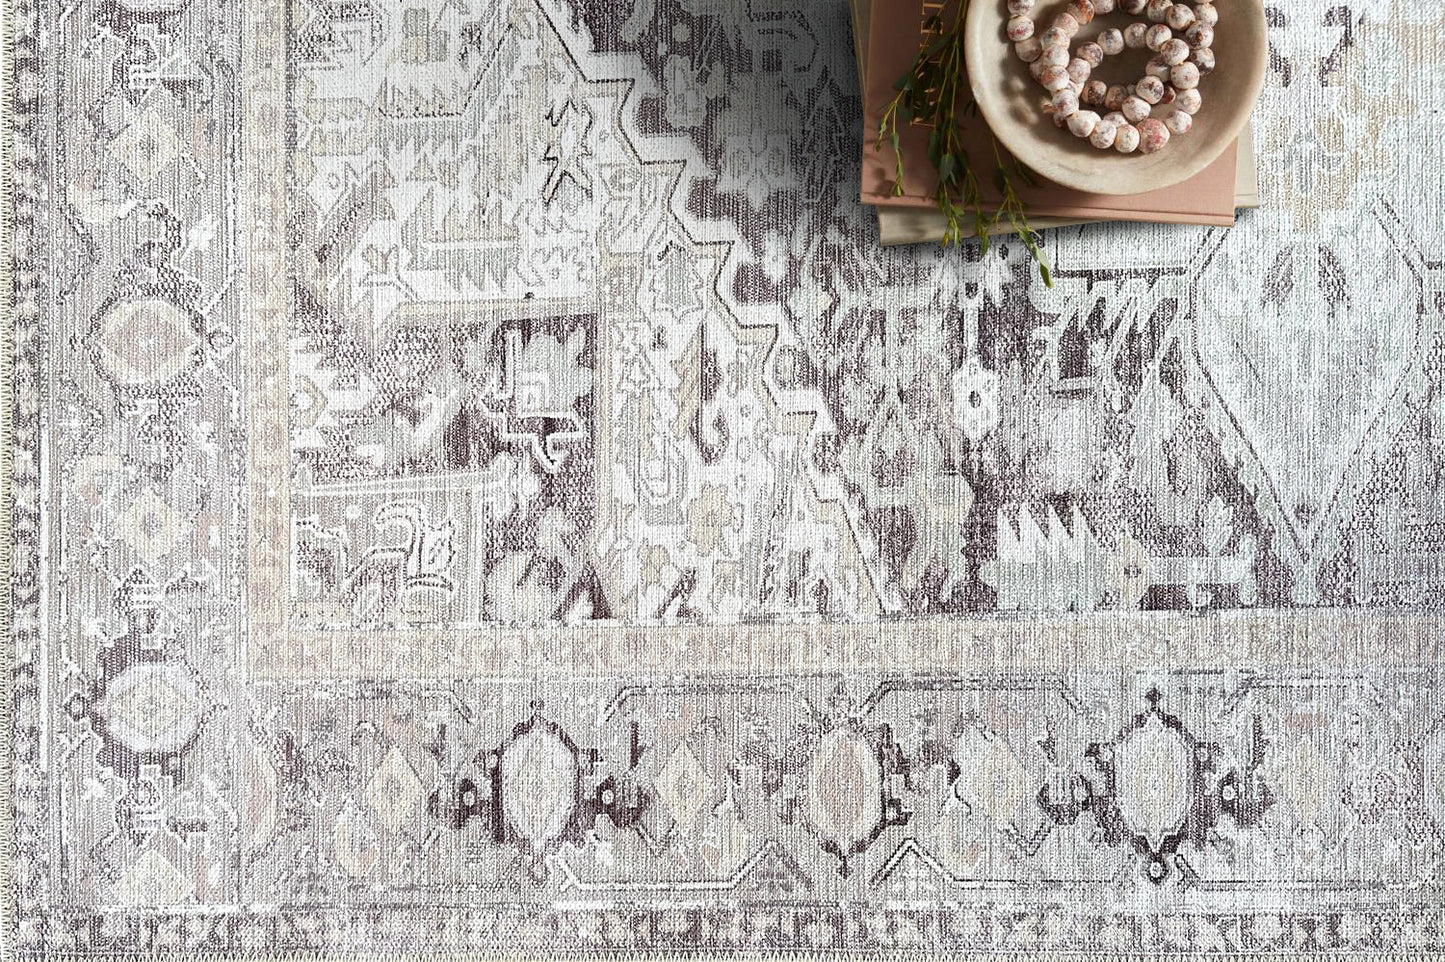 Tapis persan moderne et naturel, tapis géométriques à médaillon vintage inspiré de Heriz, pastel clair délavé, pour salon, chambre à coucher, salle de bain, cuisine